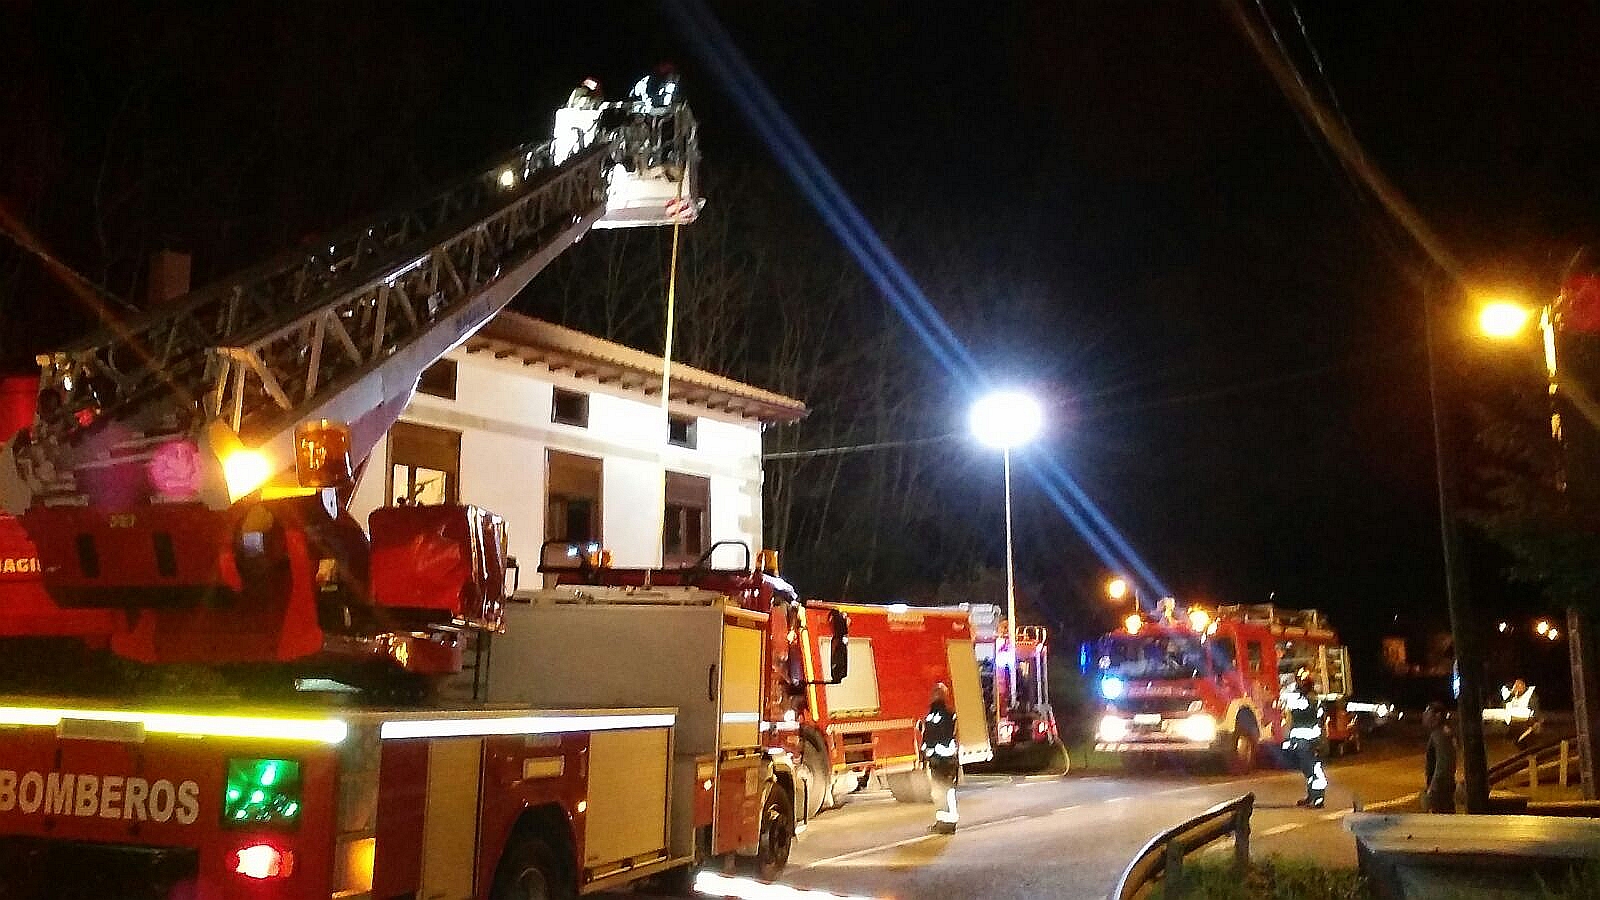 Bomberos del 112 extinguen un incendio en una vivienda de Villafufre